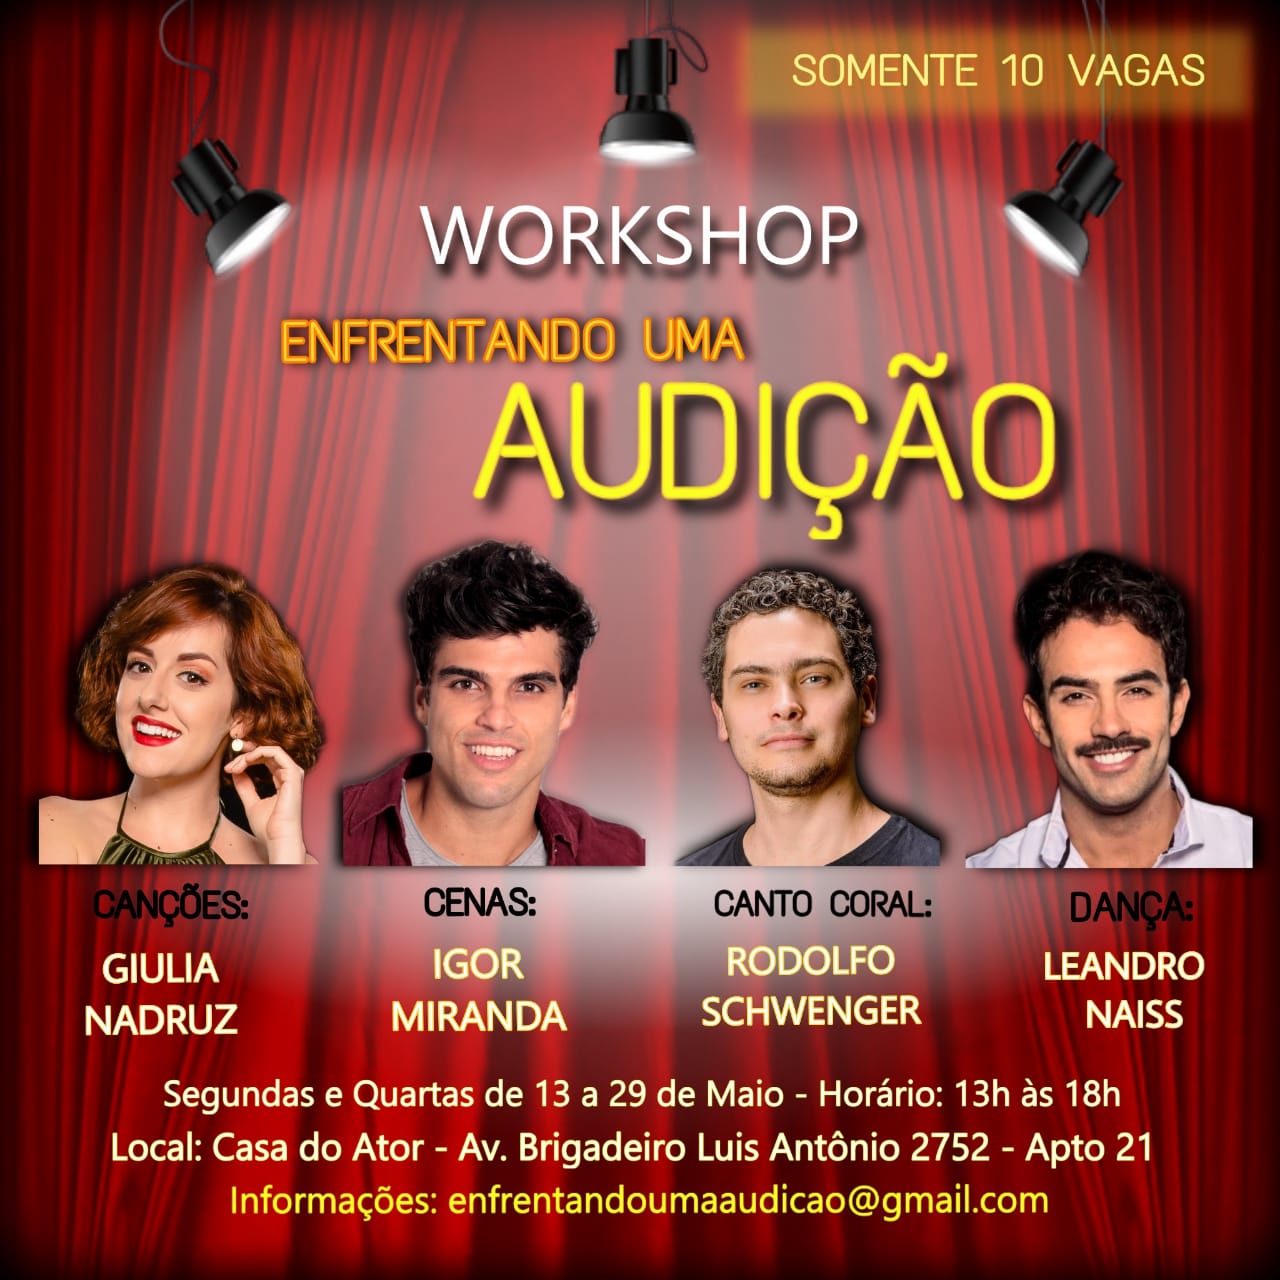 Últimas vagas: Workshop "Enfrentando uma Audição" em São Paulo